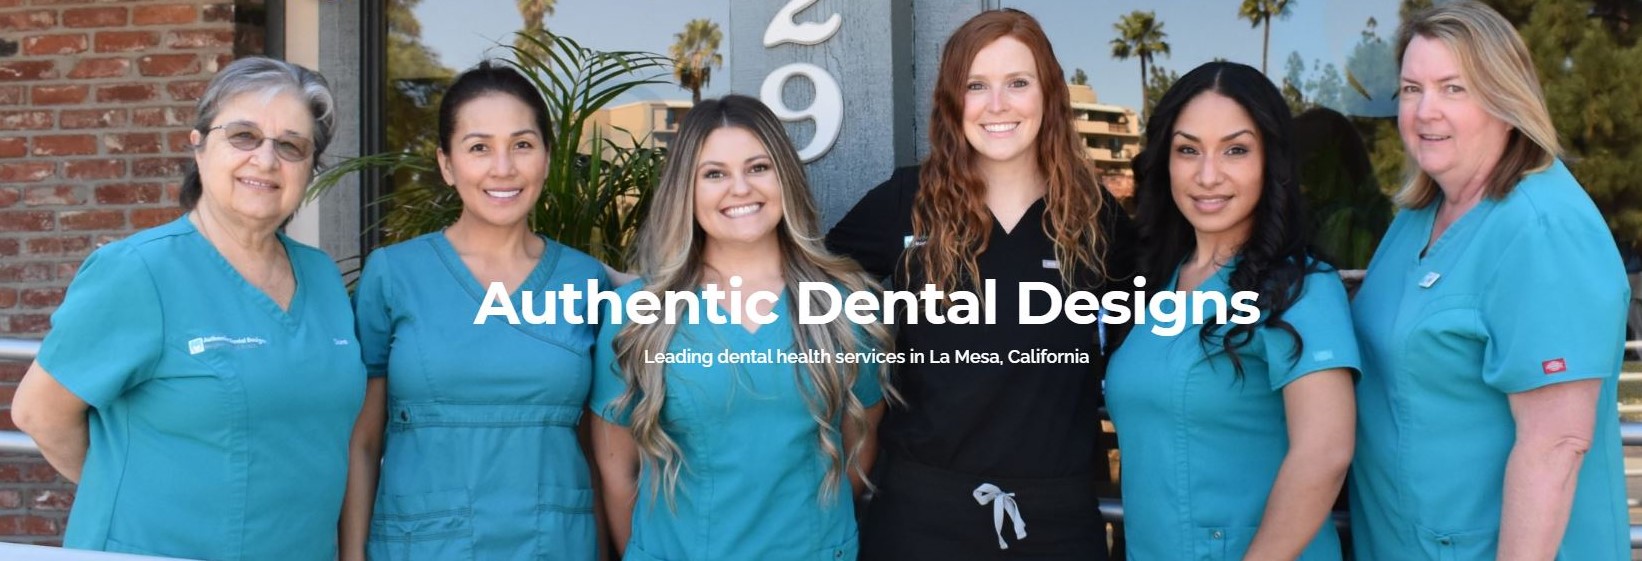 Authentic Dental Designs - Meghan Toland, D.M.D.